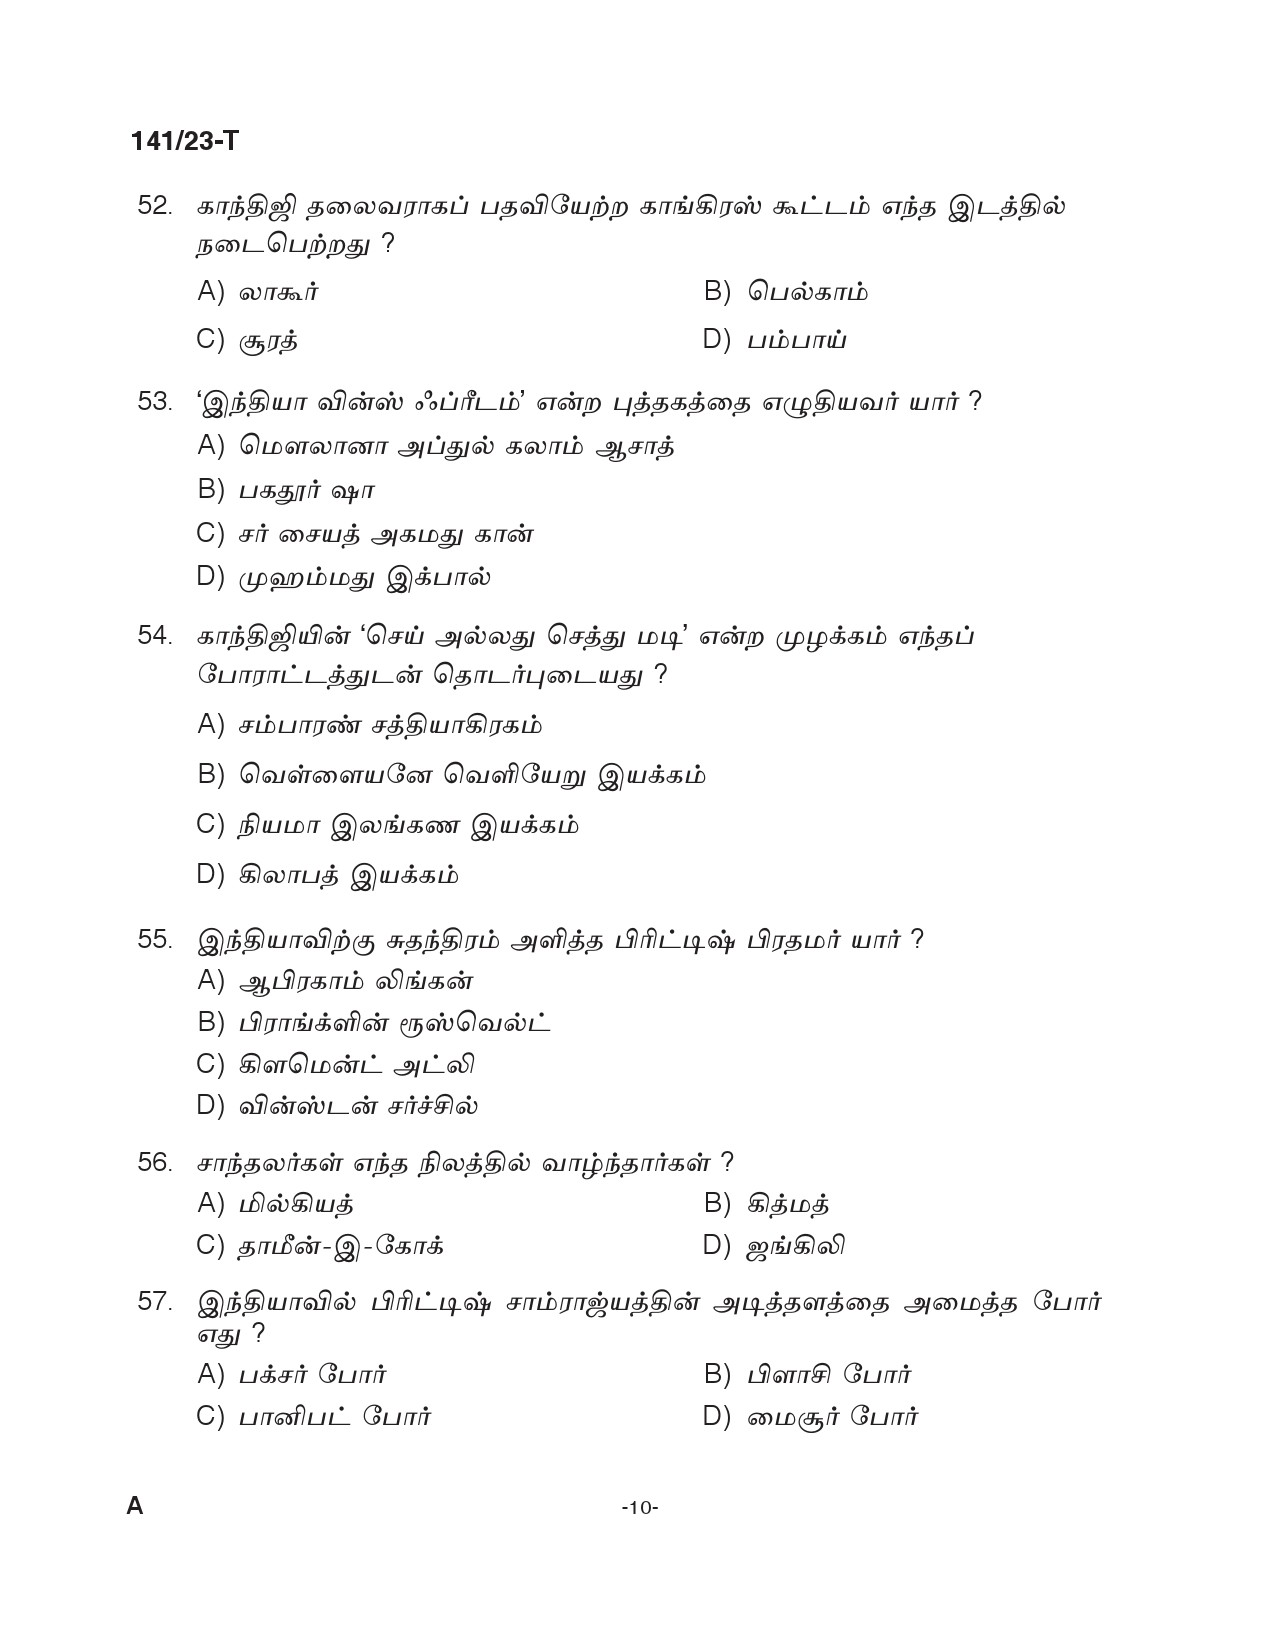 KPSC LGS Tamil Exam 2023 Code 1412023 T 9